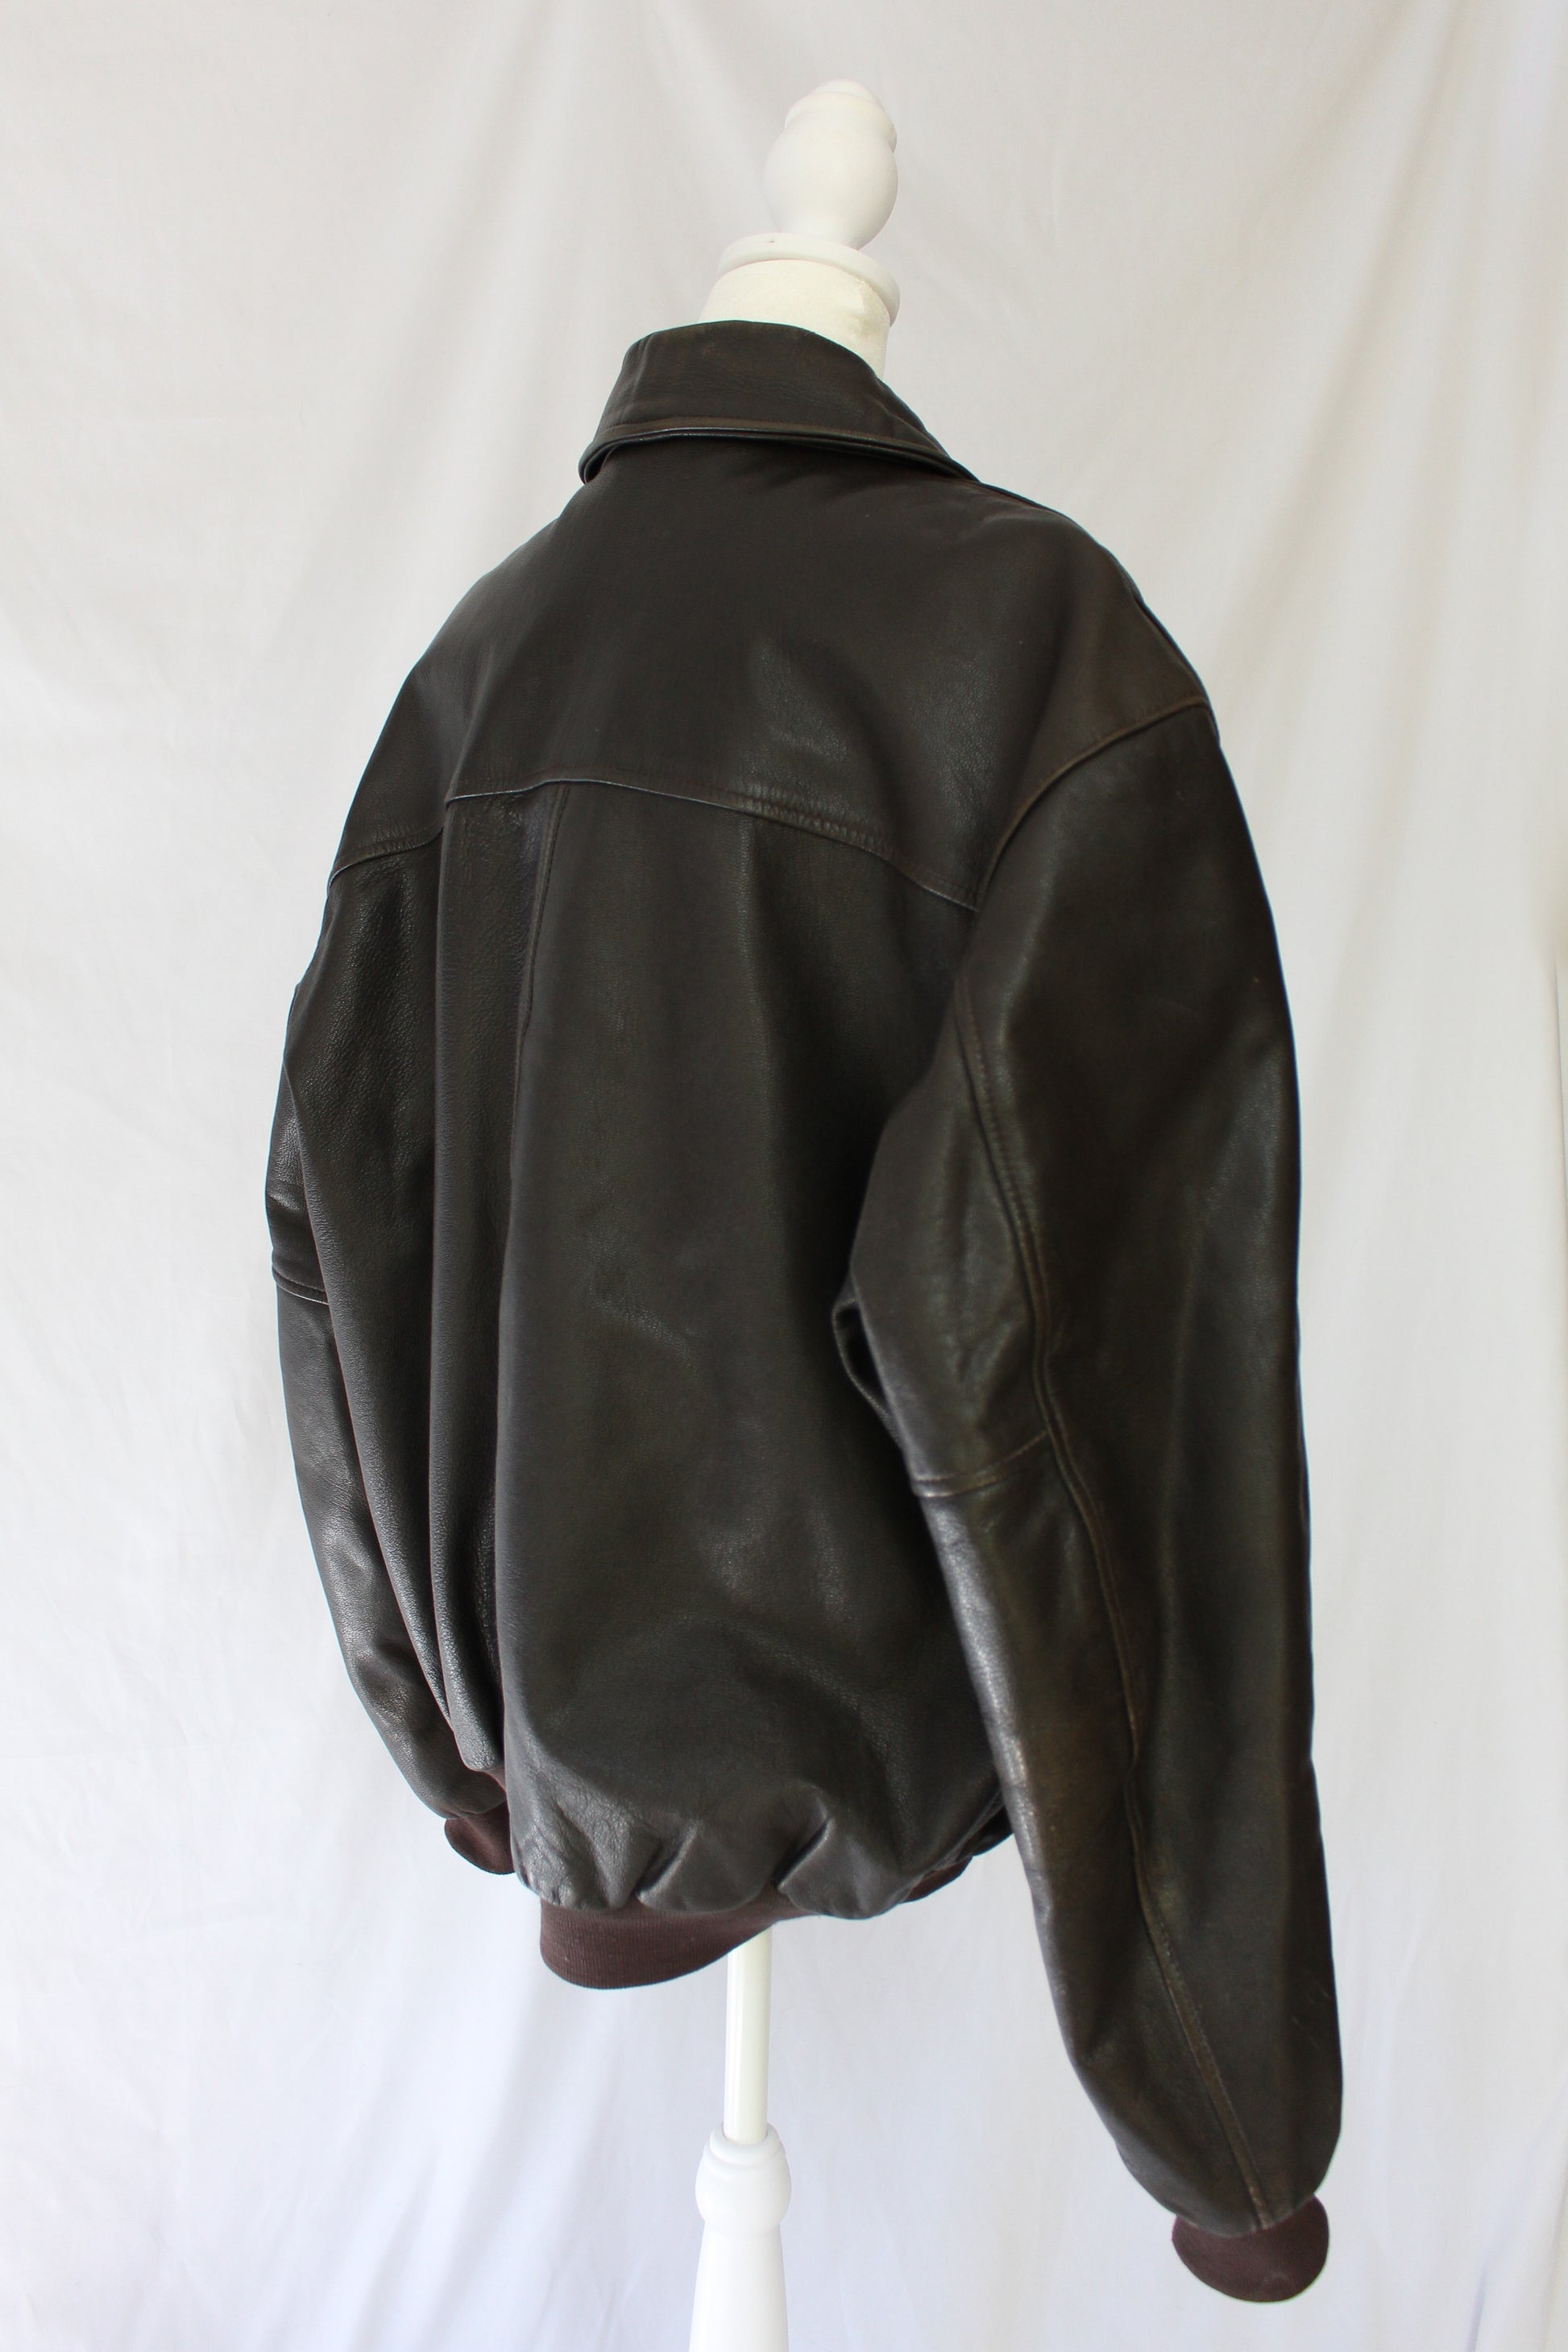 vintage brown bomber jacket men's size large